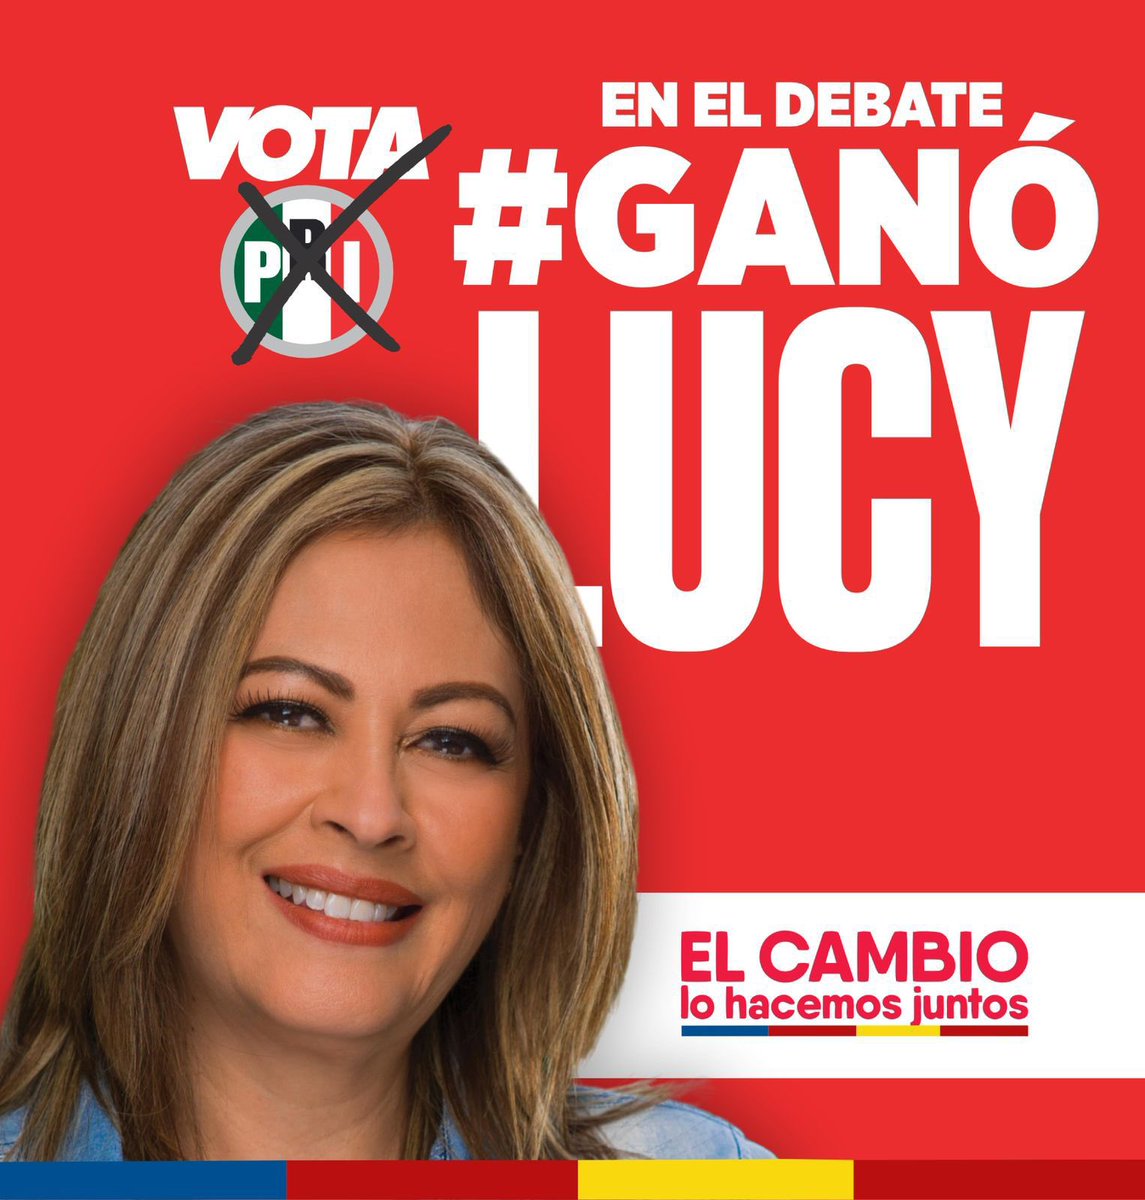 ¡El debate lo #GanóLucy porque demostró que conoce su tierra y ha trabajado por ella, porque sabe cómo enfrentar los retos que vive Morelos! ¡Vamos unidos y fuertes, con todo para ganar con @LucyMezaGzm, próxima gobernadora! #VotaPRI